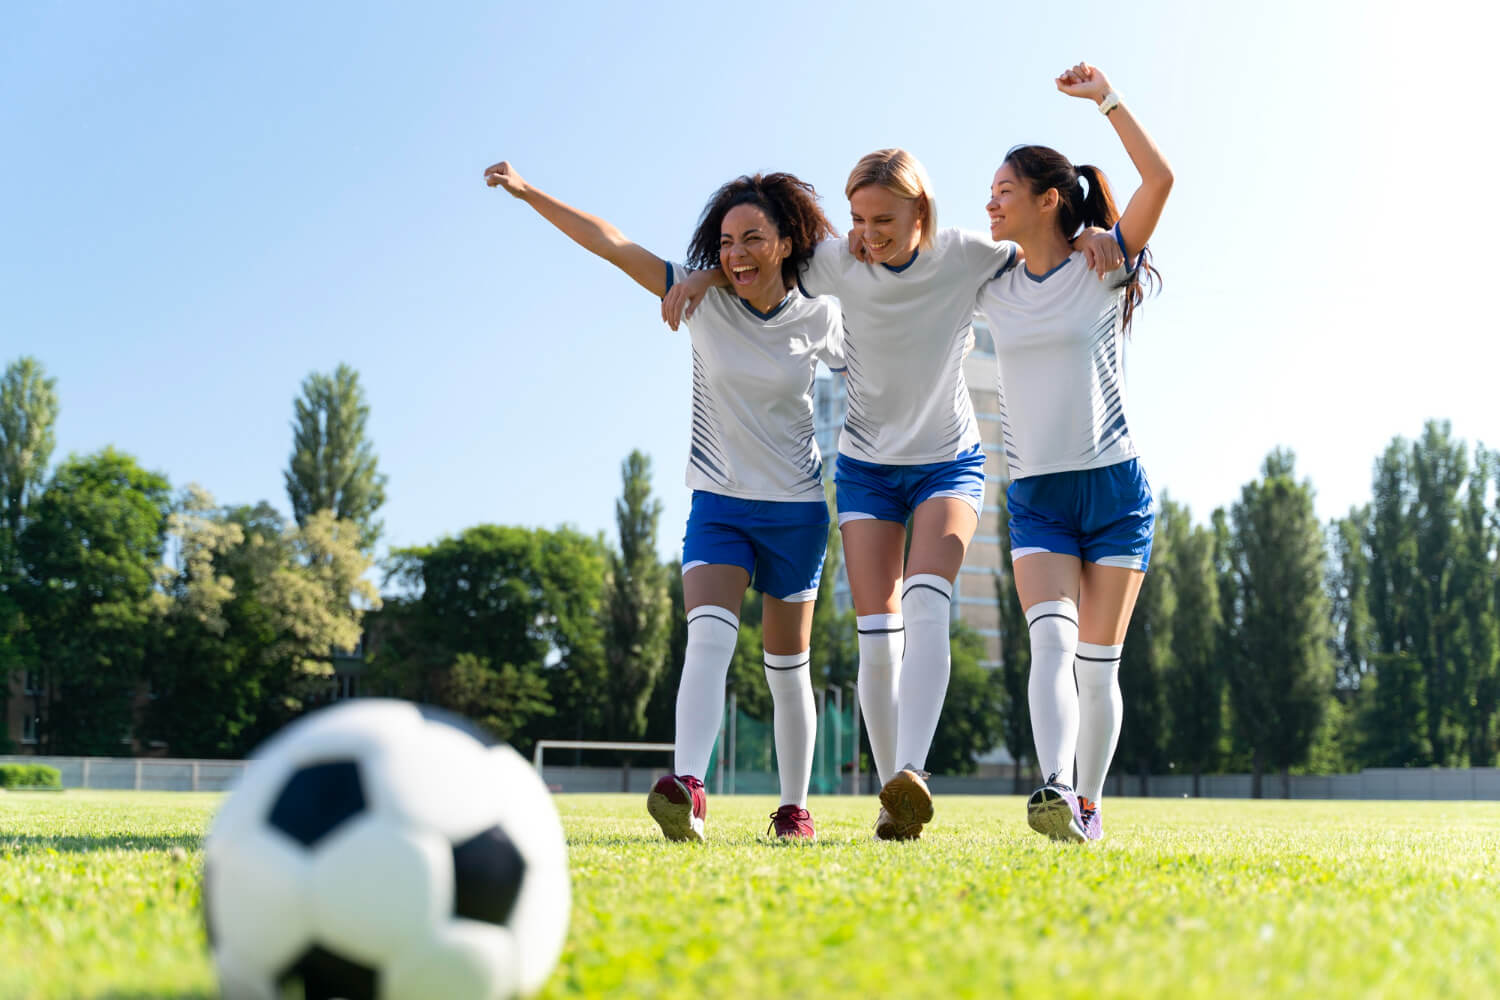 O Futebol Brasileiro Feminino: Um Progresso em Direção à Equidade nos Campos